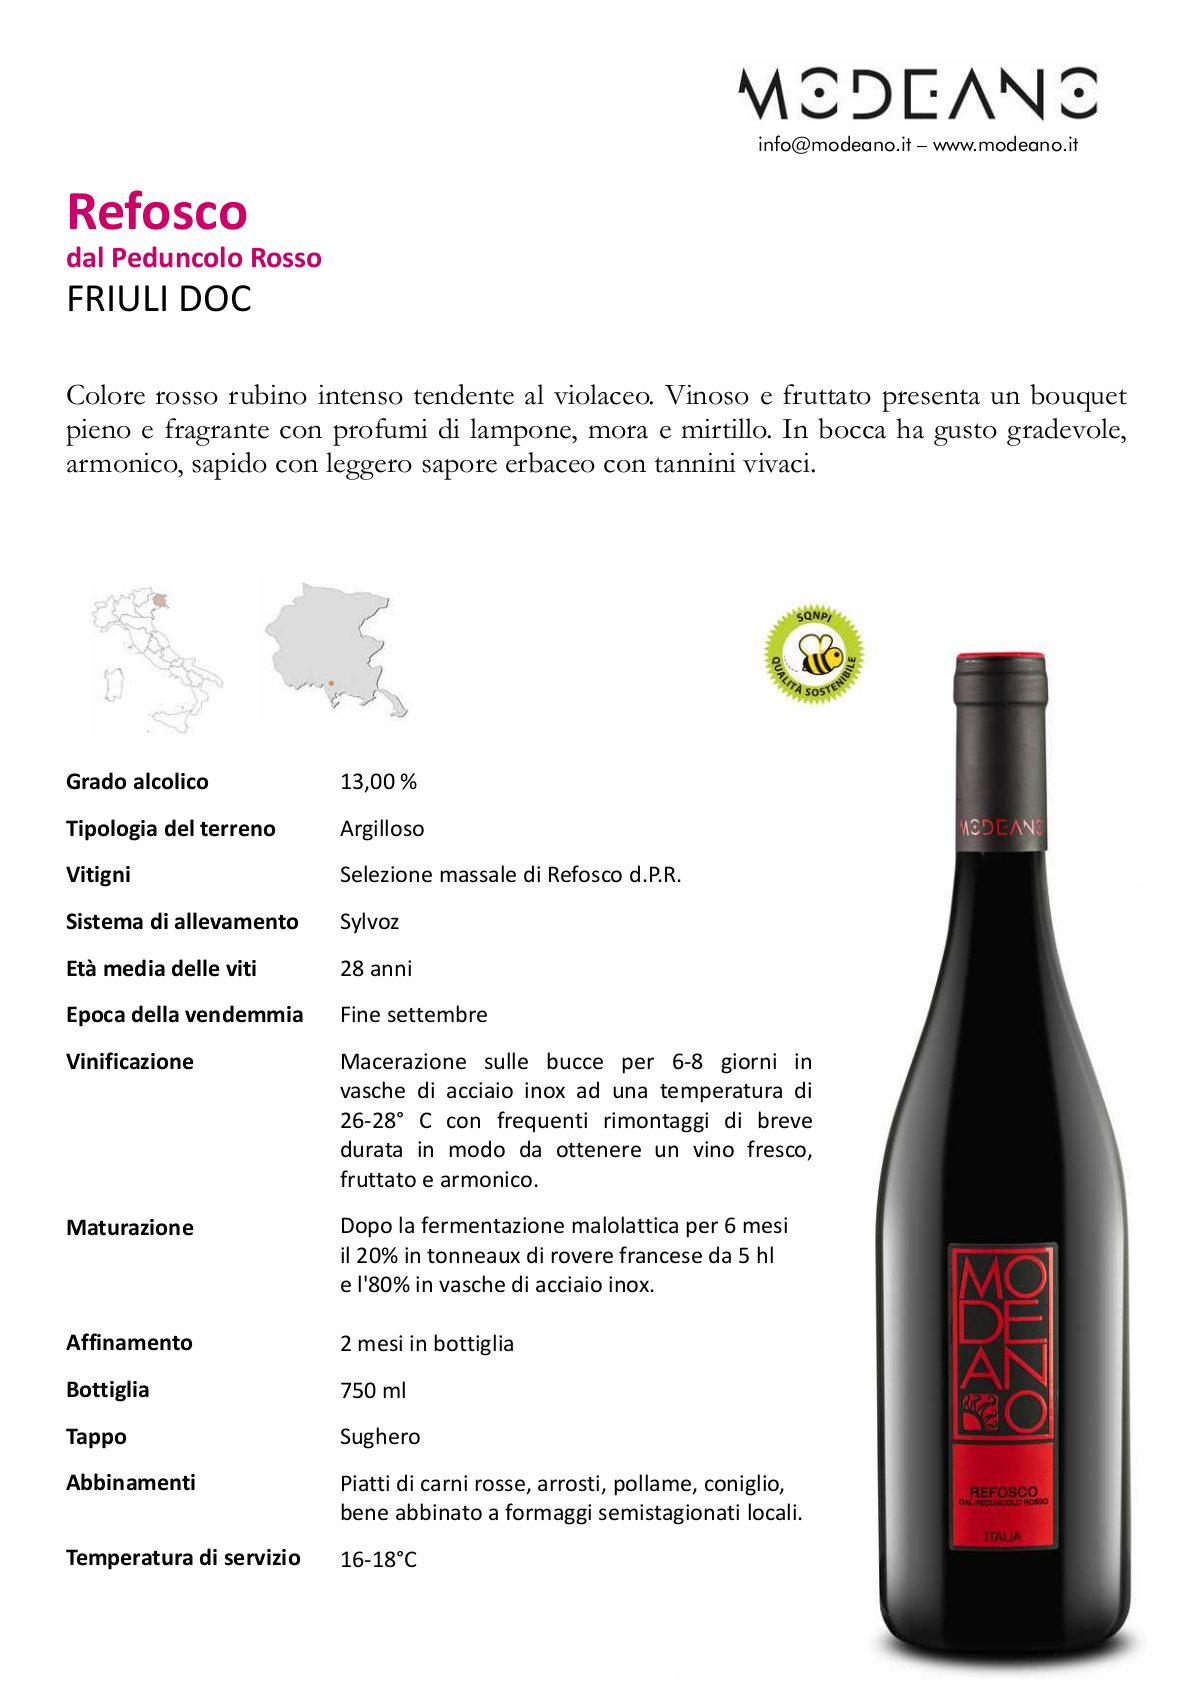 Refosco dal Peduncolo Rosso DOC Friuli 750 ml